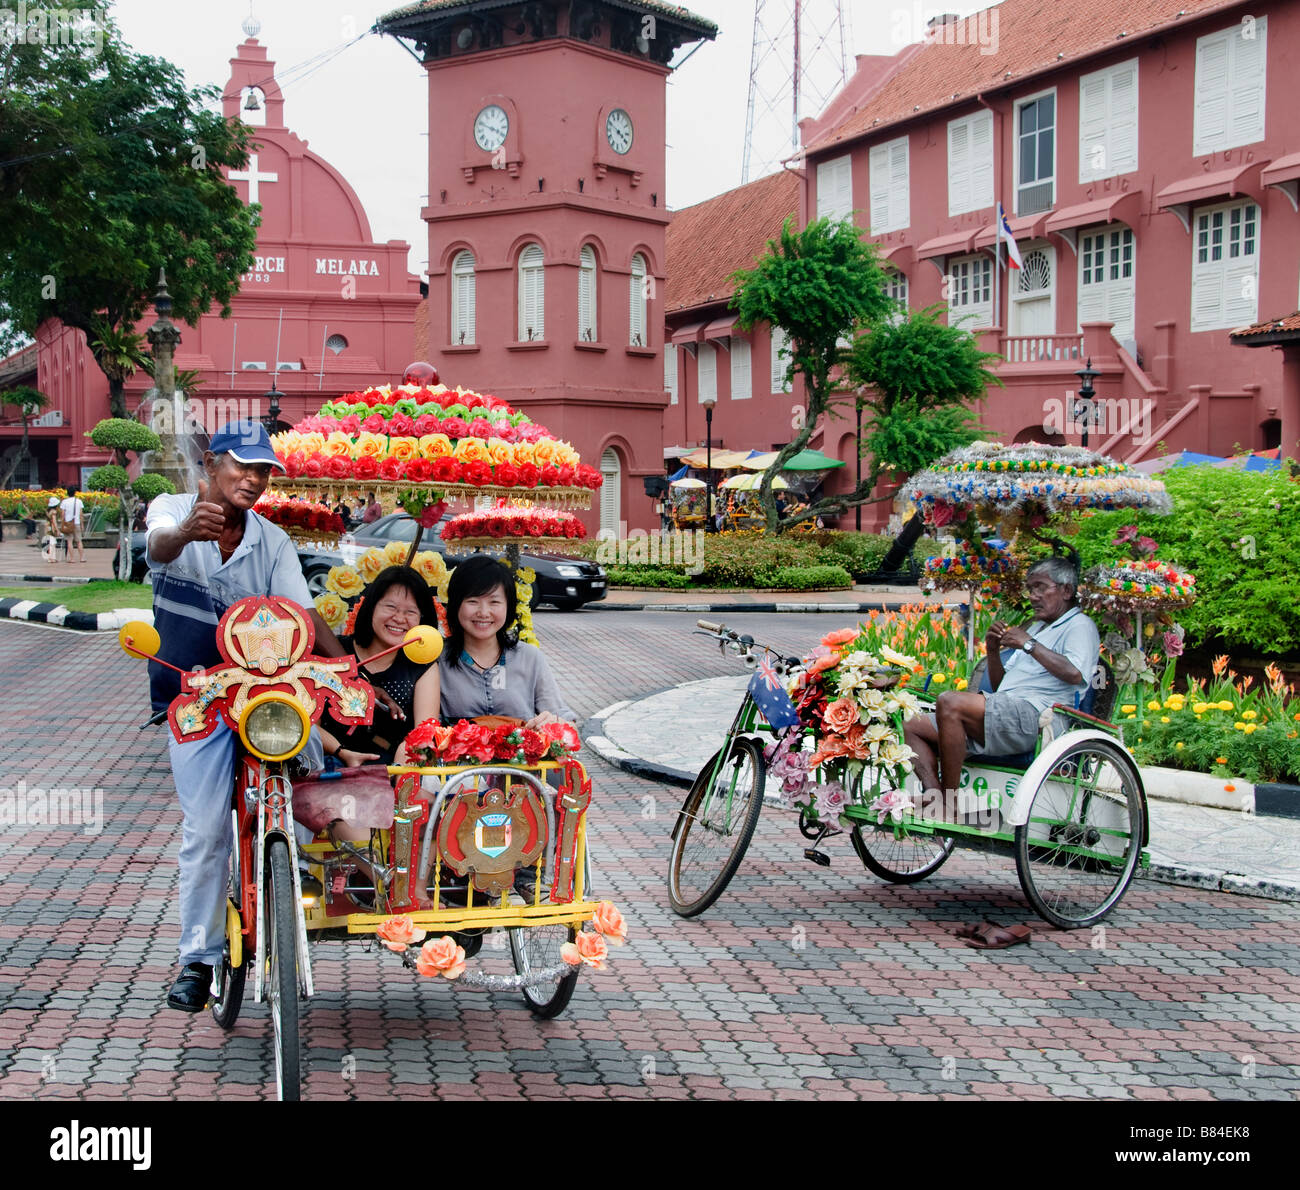 Malacca Malaysia fiore fiori decorateted tricicli rickshaw pedicab Chiesa di Cristo Foto Stock